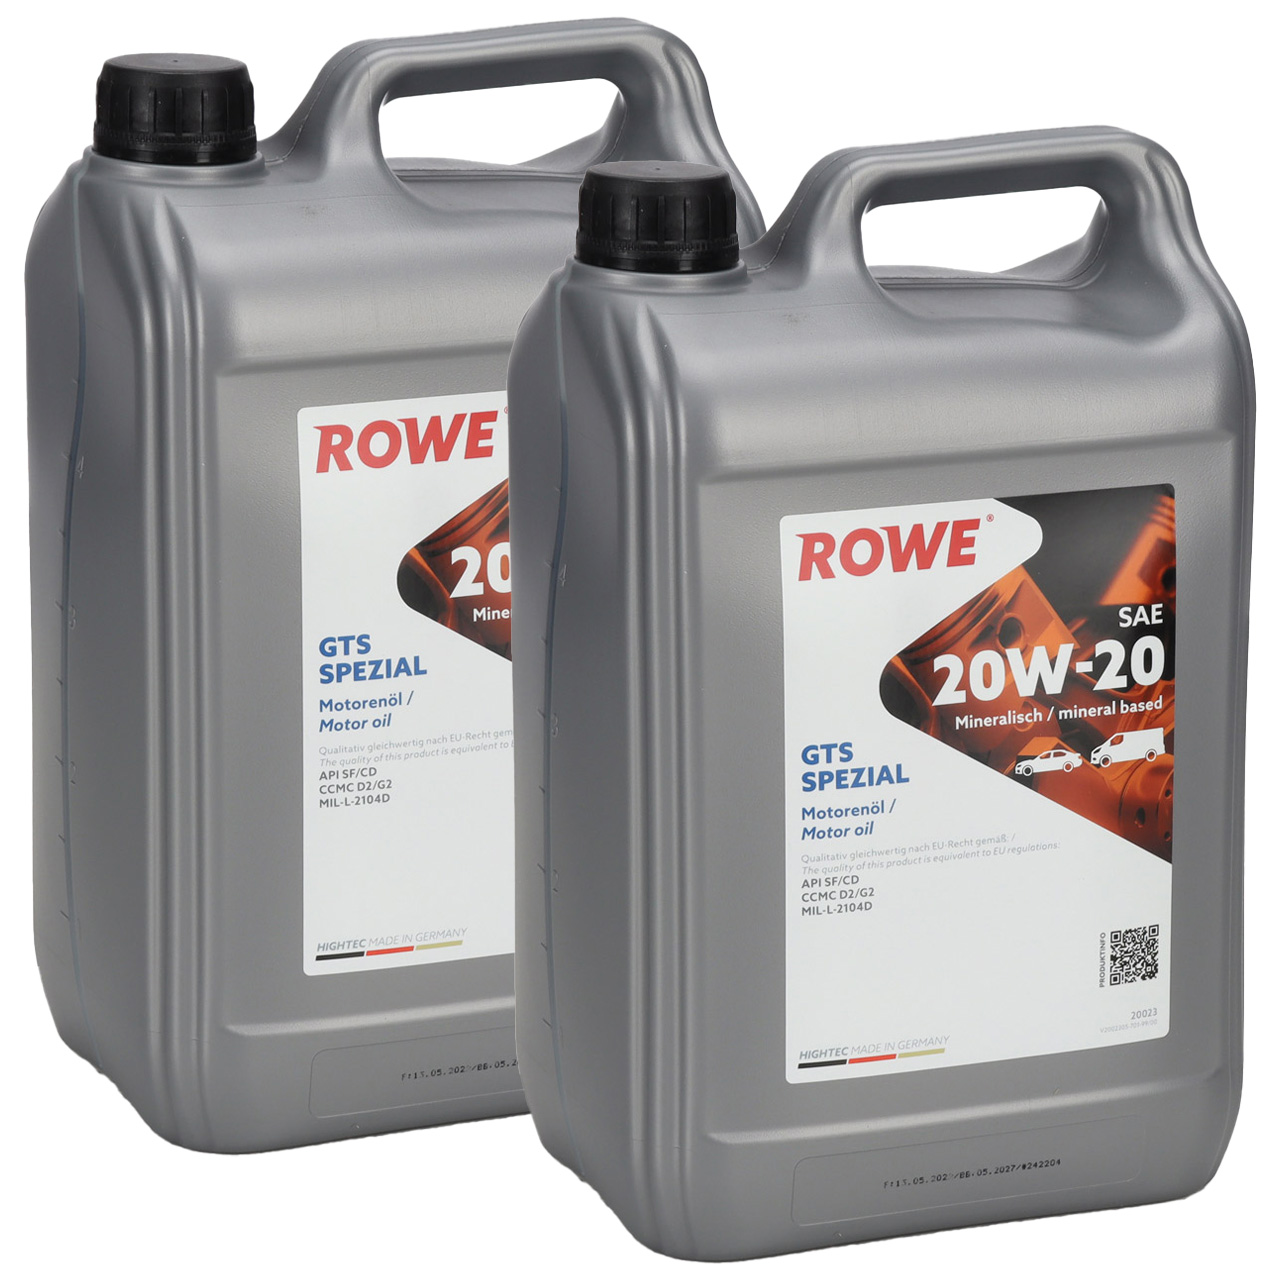 10L 10 Liter ROWE GTS SPEZIAL 20W-20 20W20 Motoröl Öl API SF/CD CCMC D/G2 MIL-L-2104D